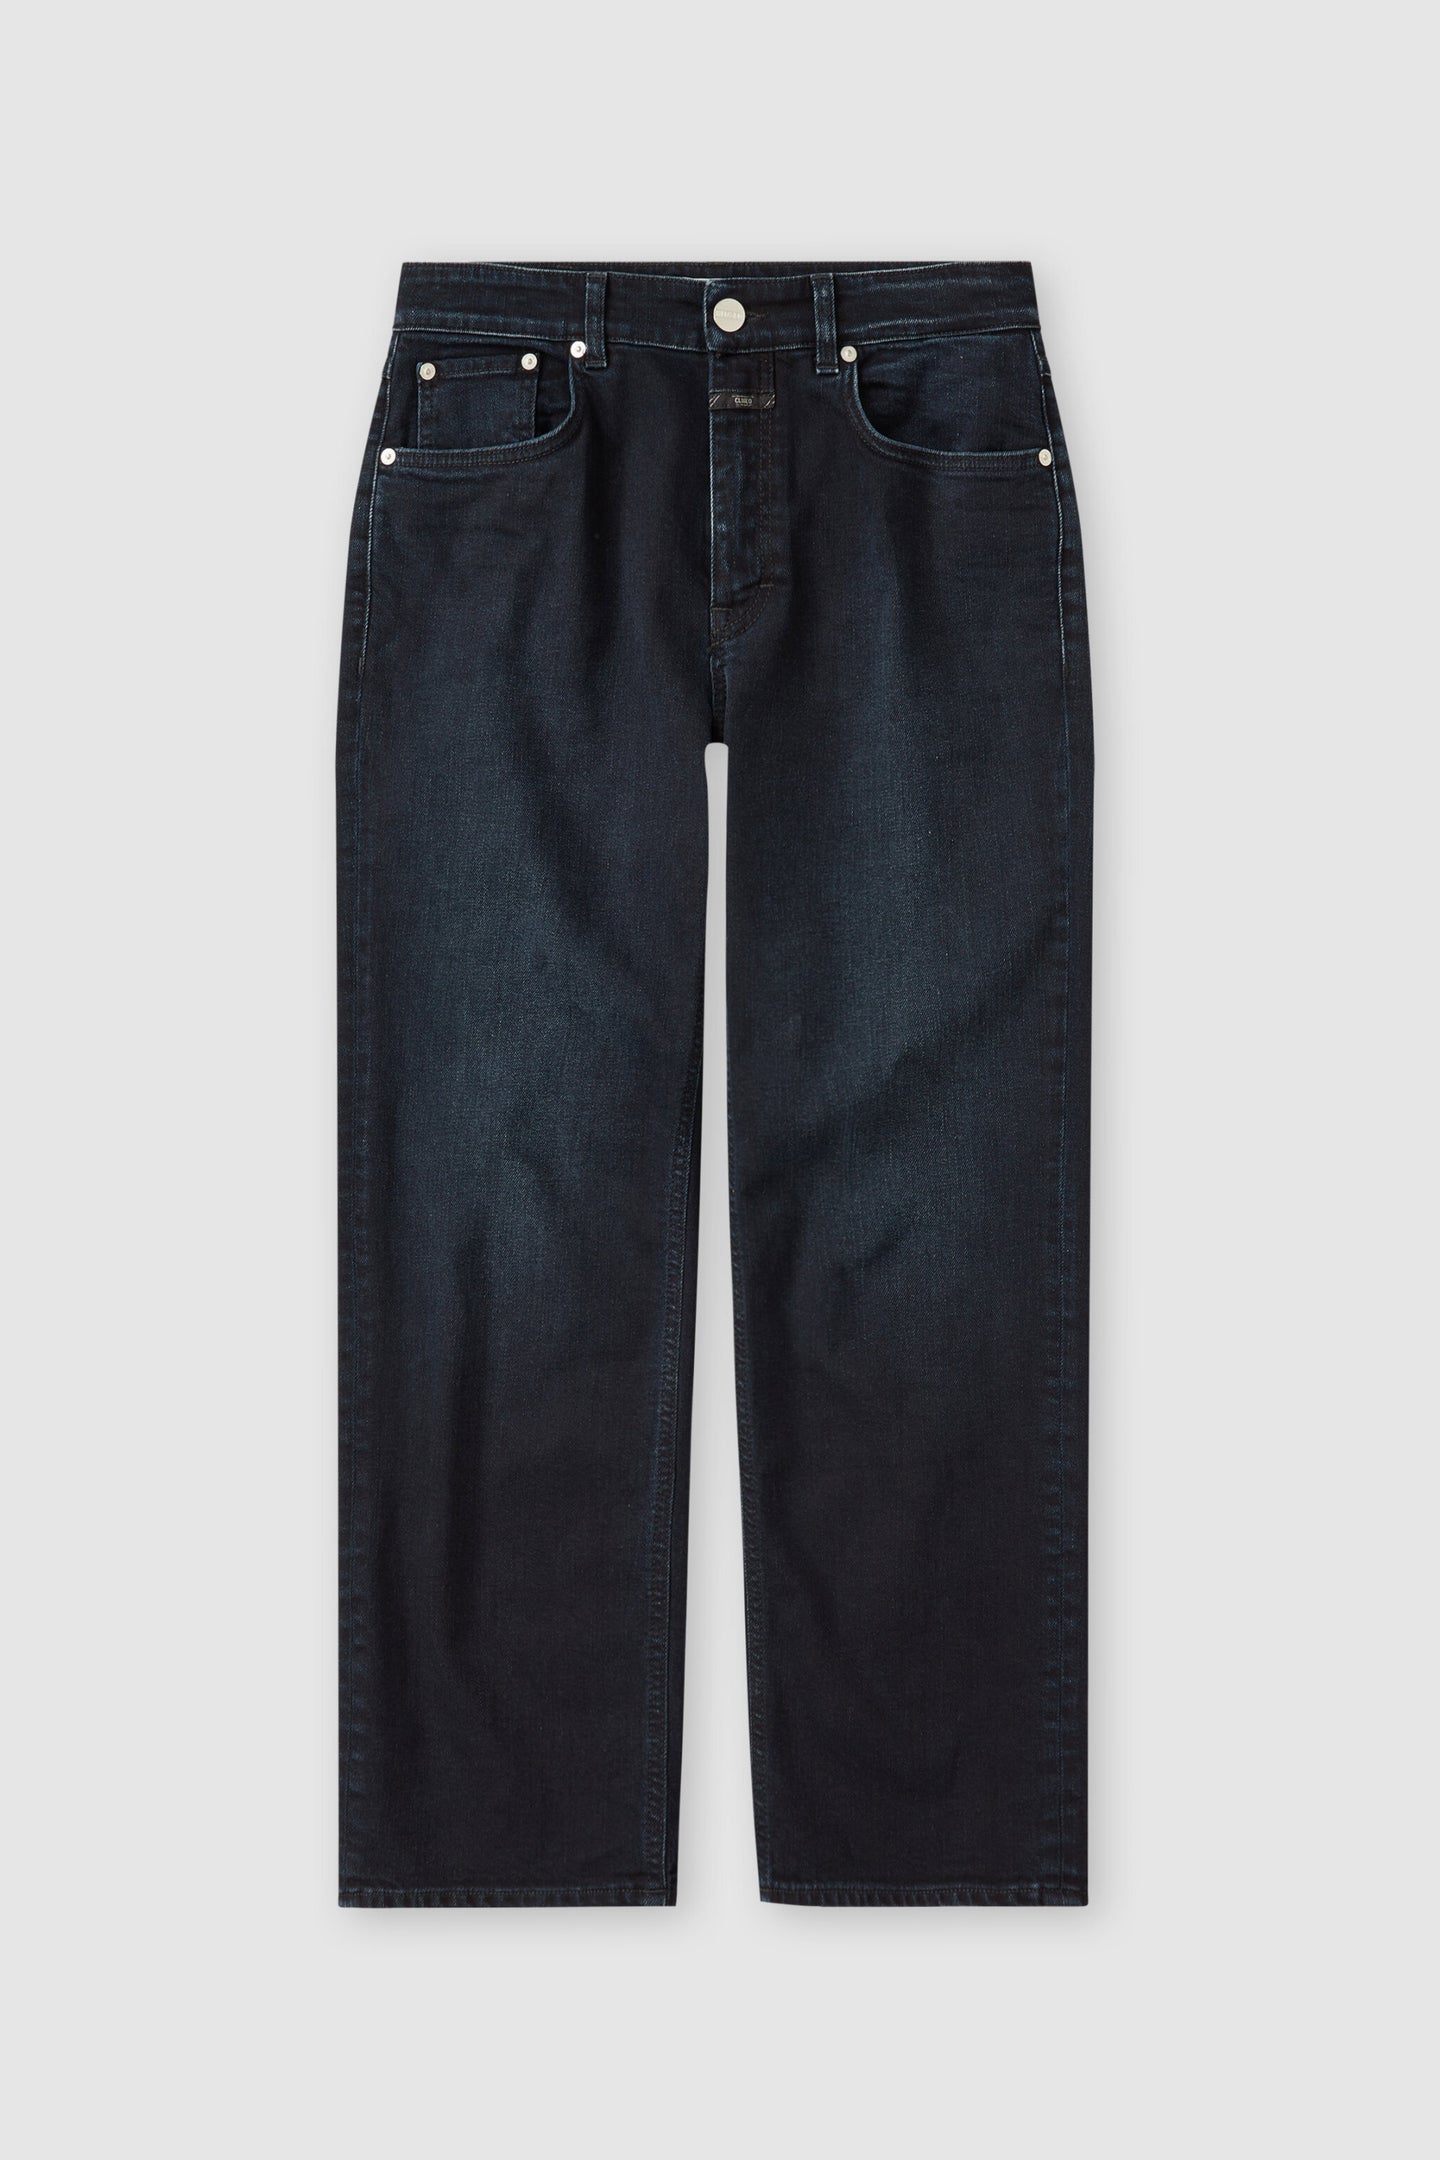 Jeans Milo C91243-02m-2g Blue-Black